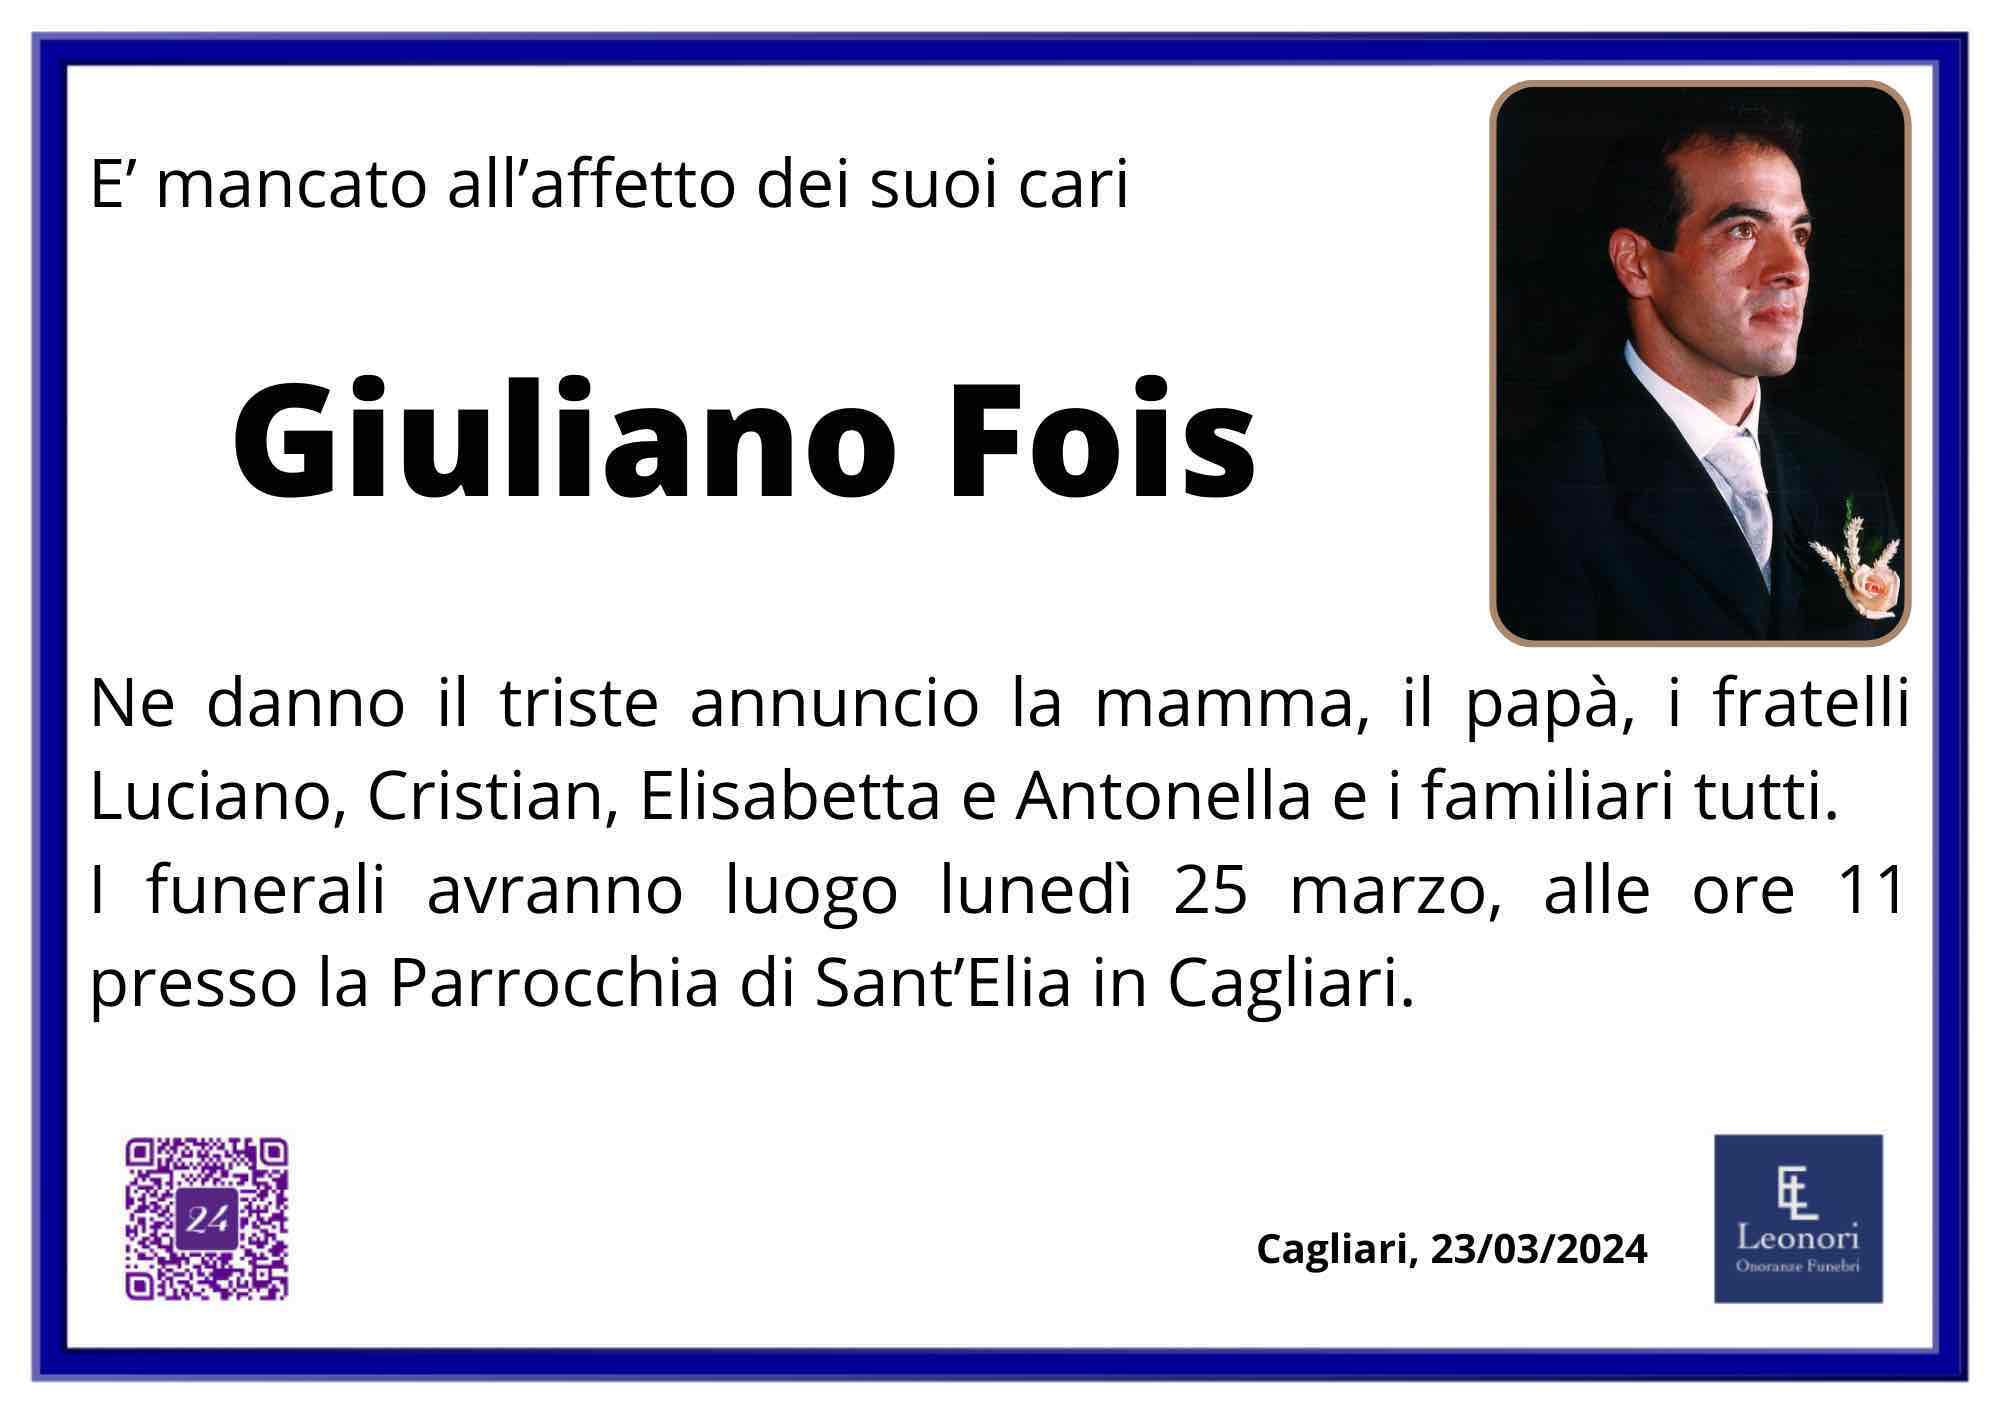 Giuliano Fois